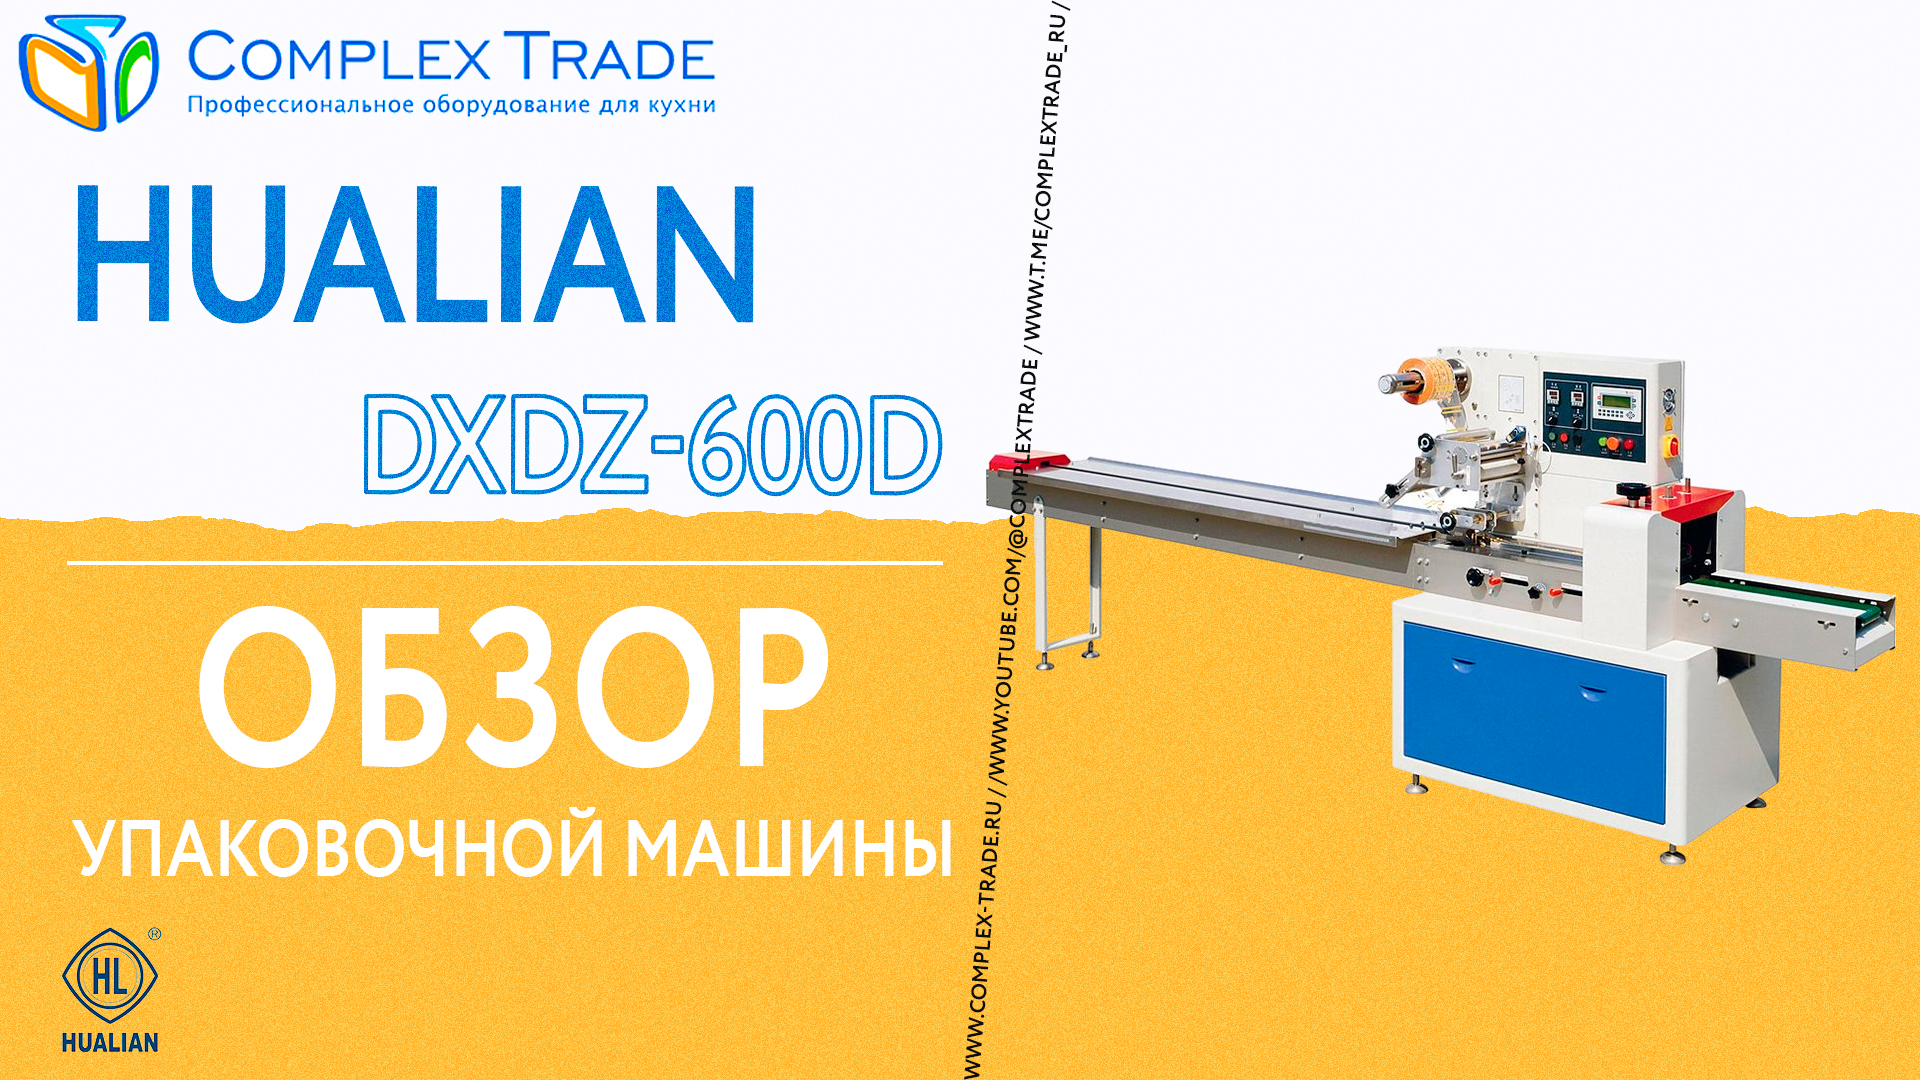 Hualian DXDZ-600D - Обзор упаковочной машины